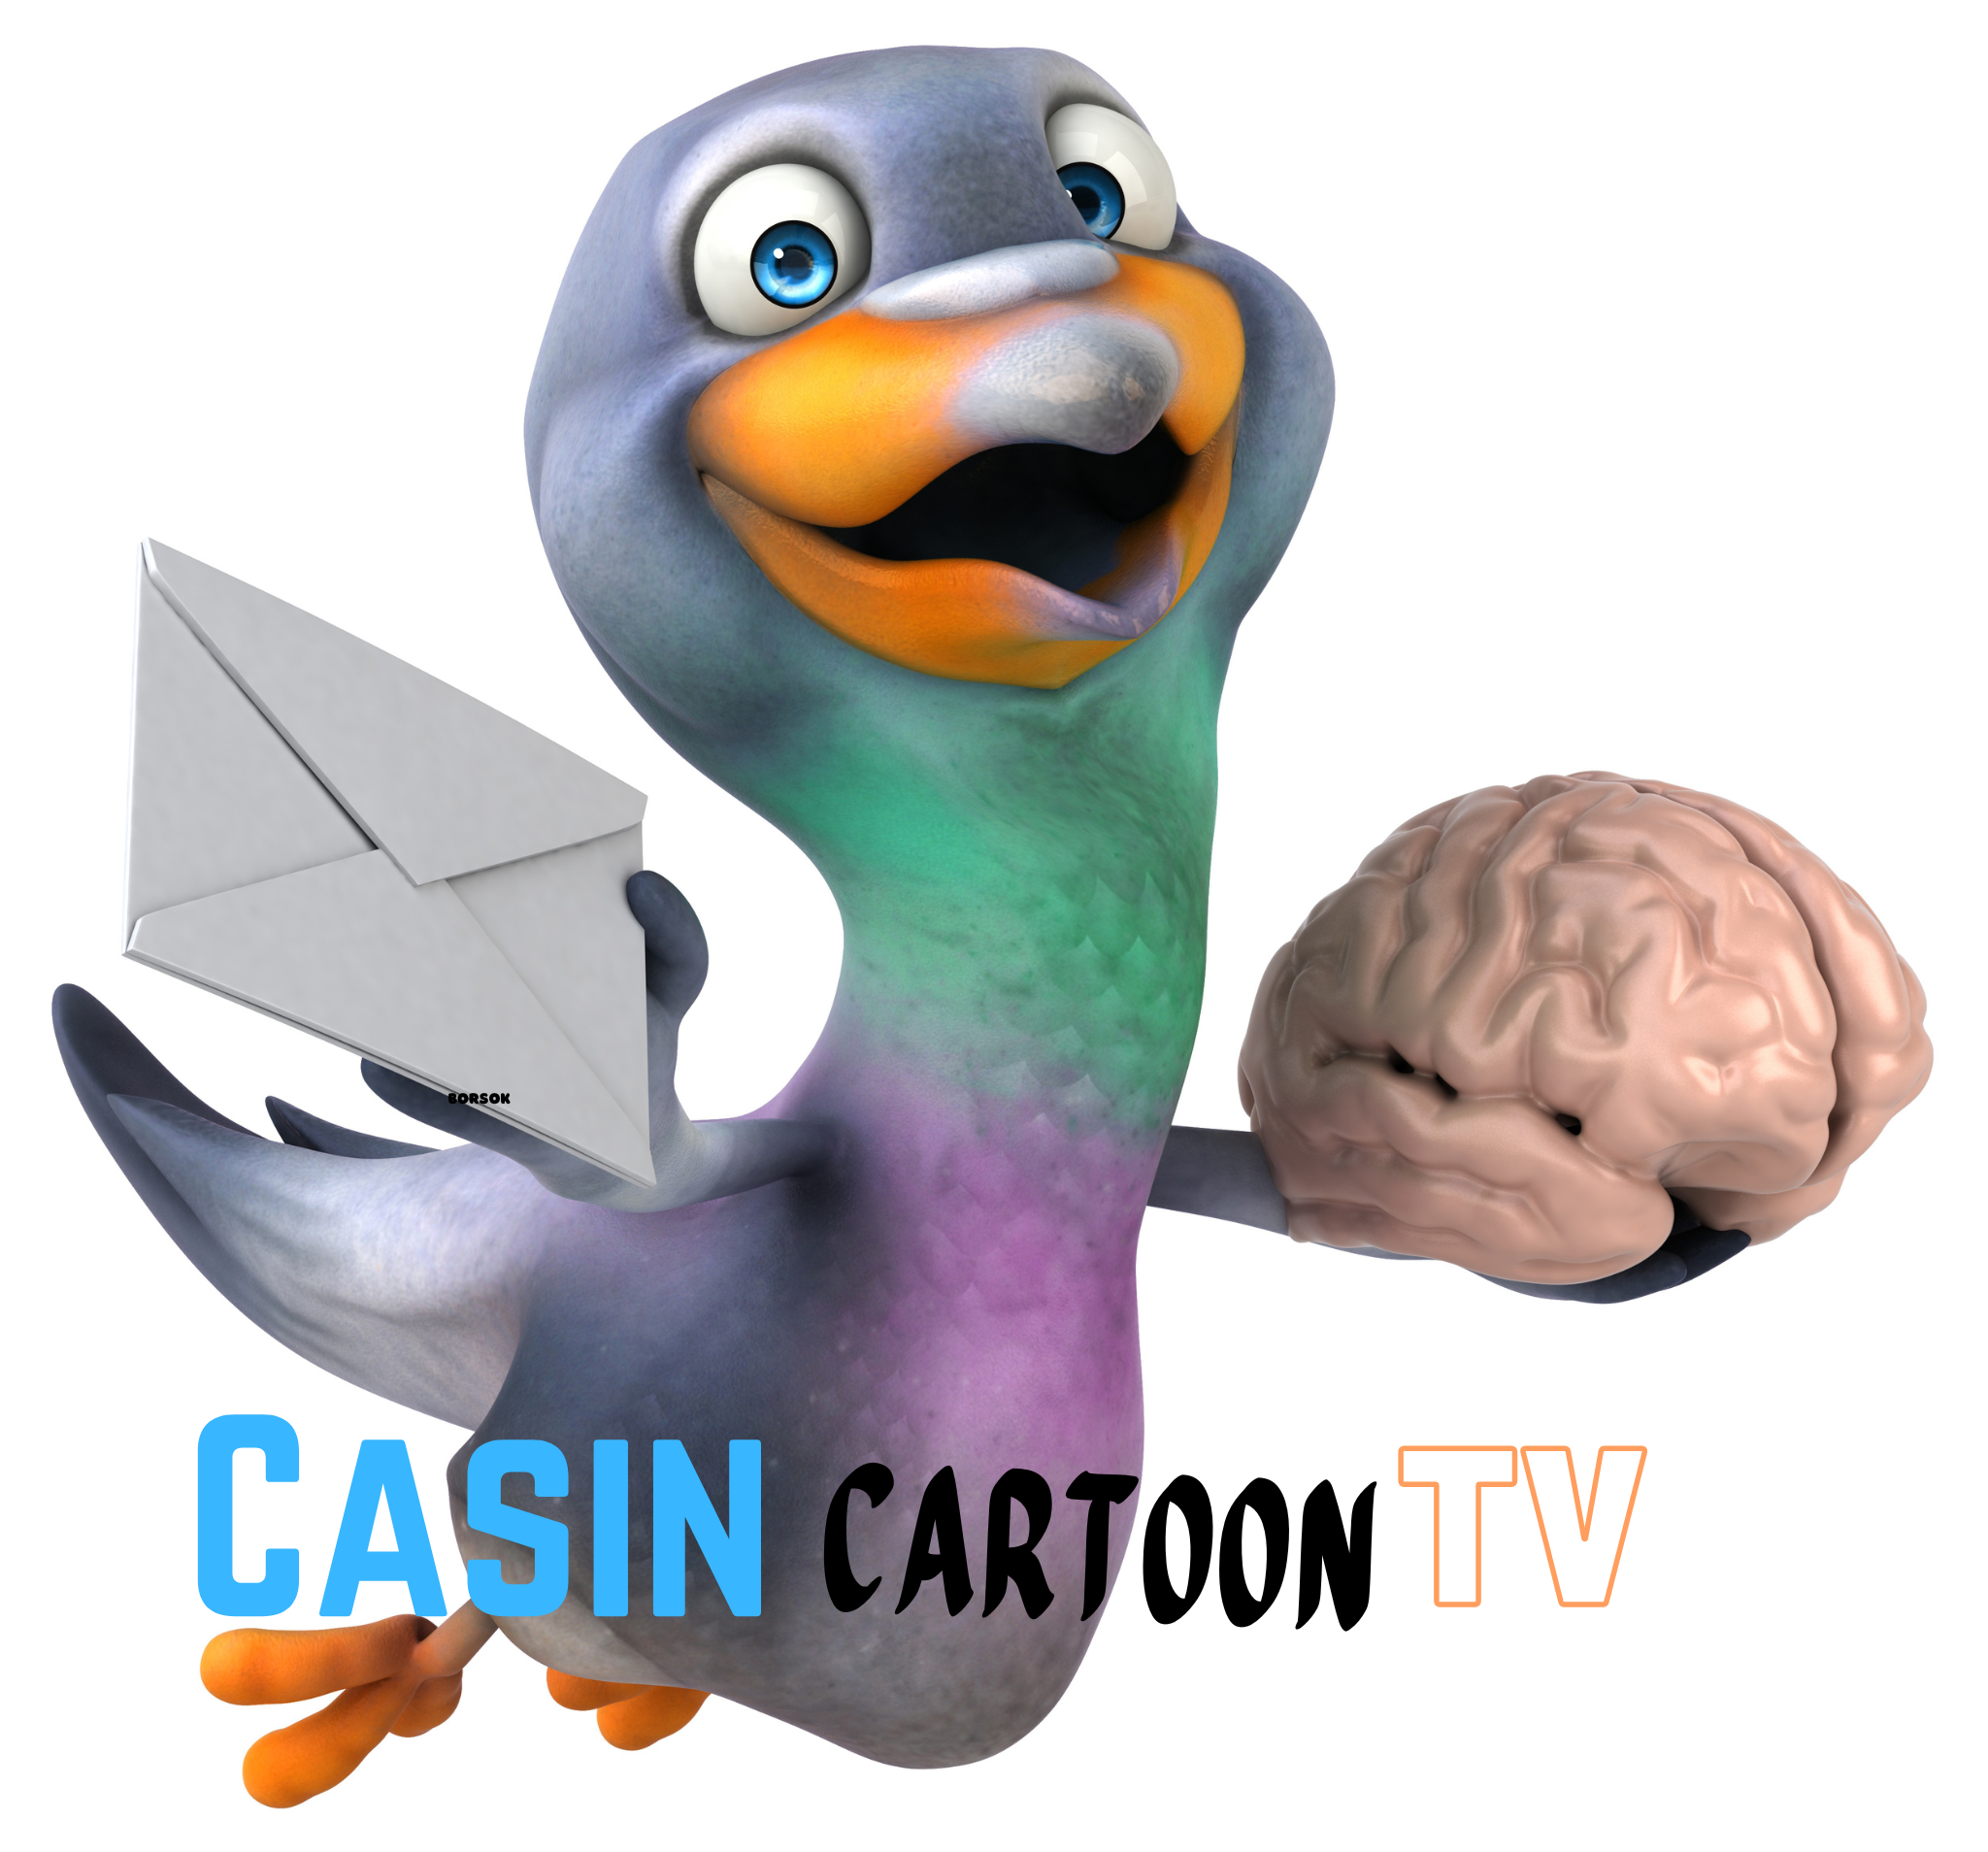 Casin cartoon tv